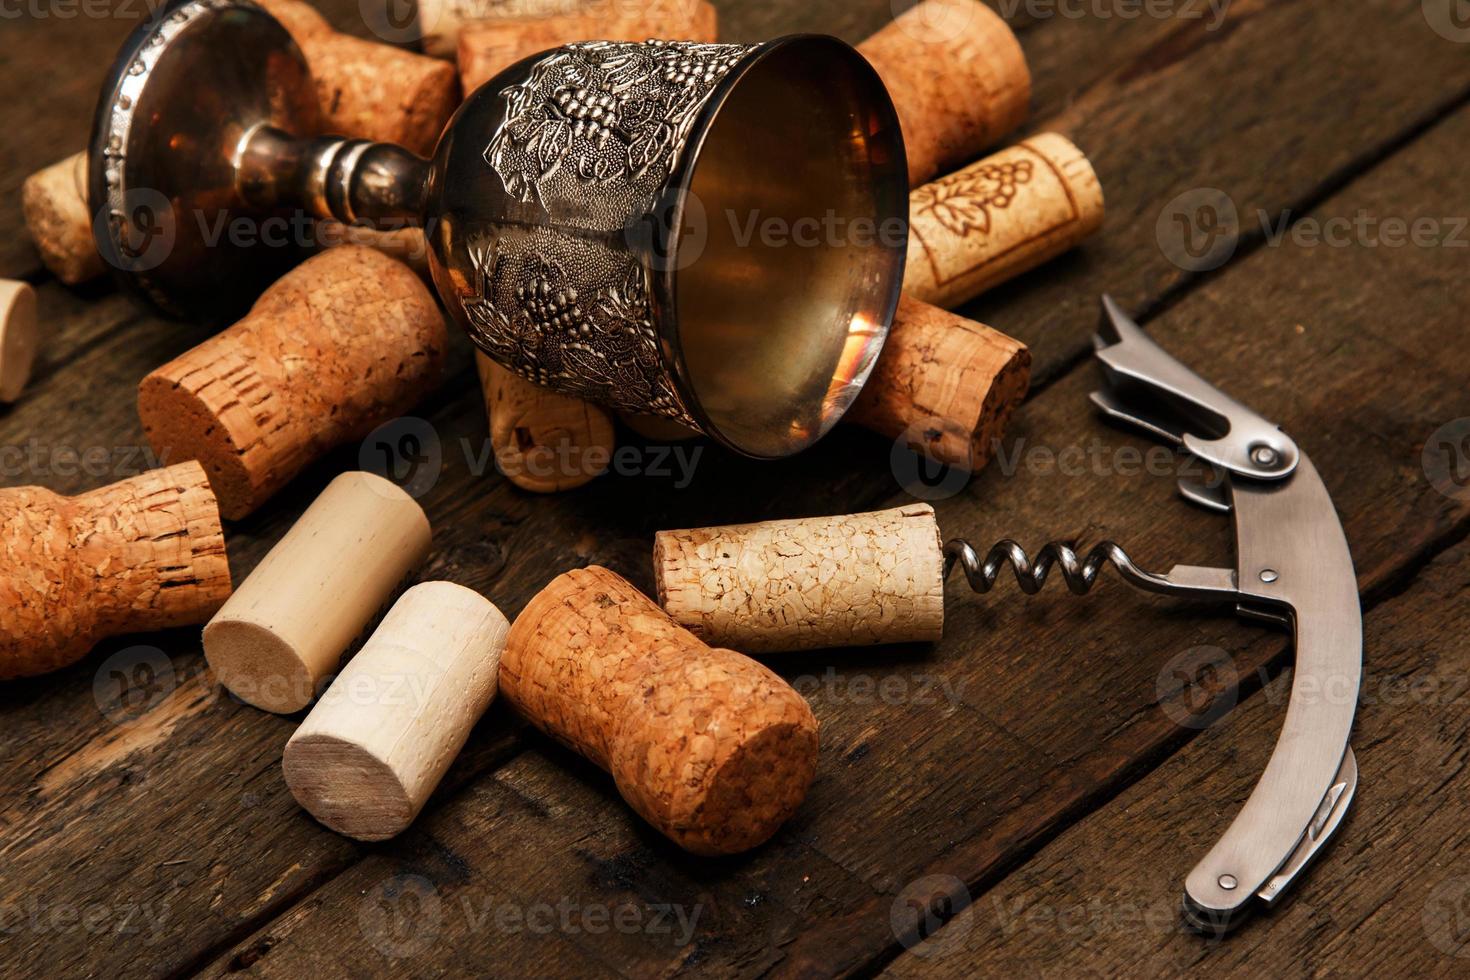 taça medieval e rolhas de vinho foto